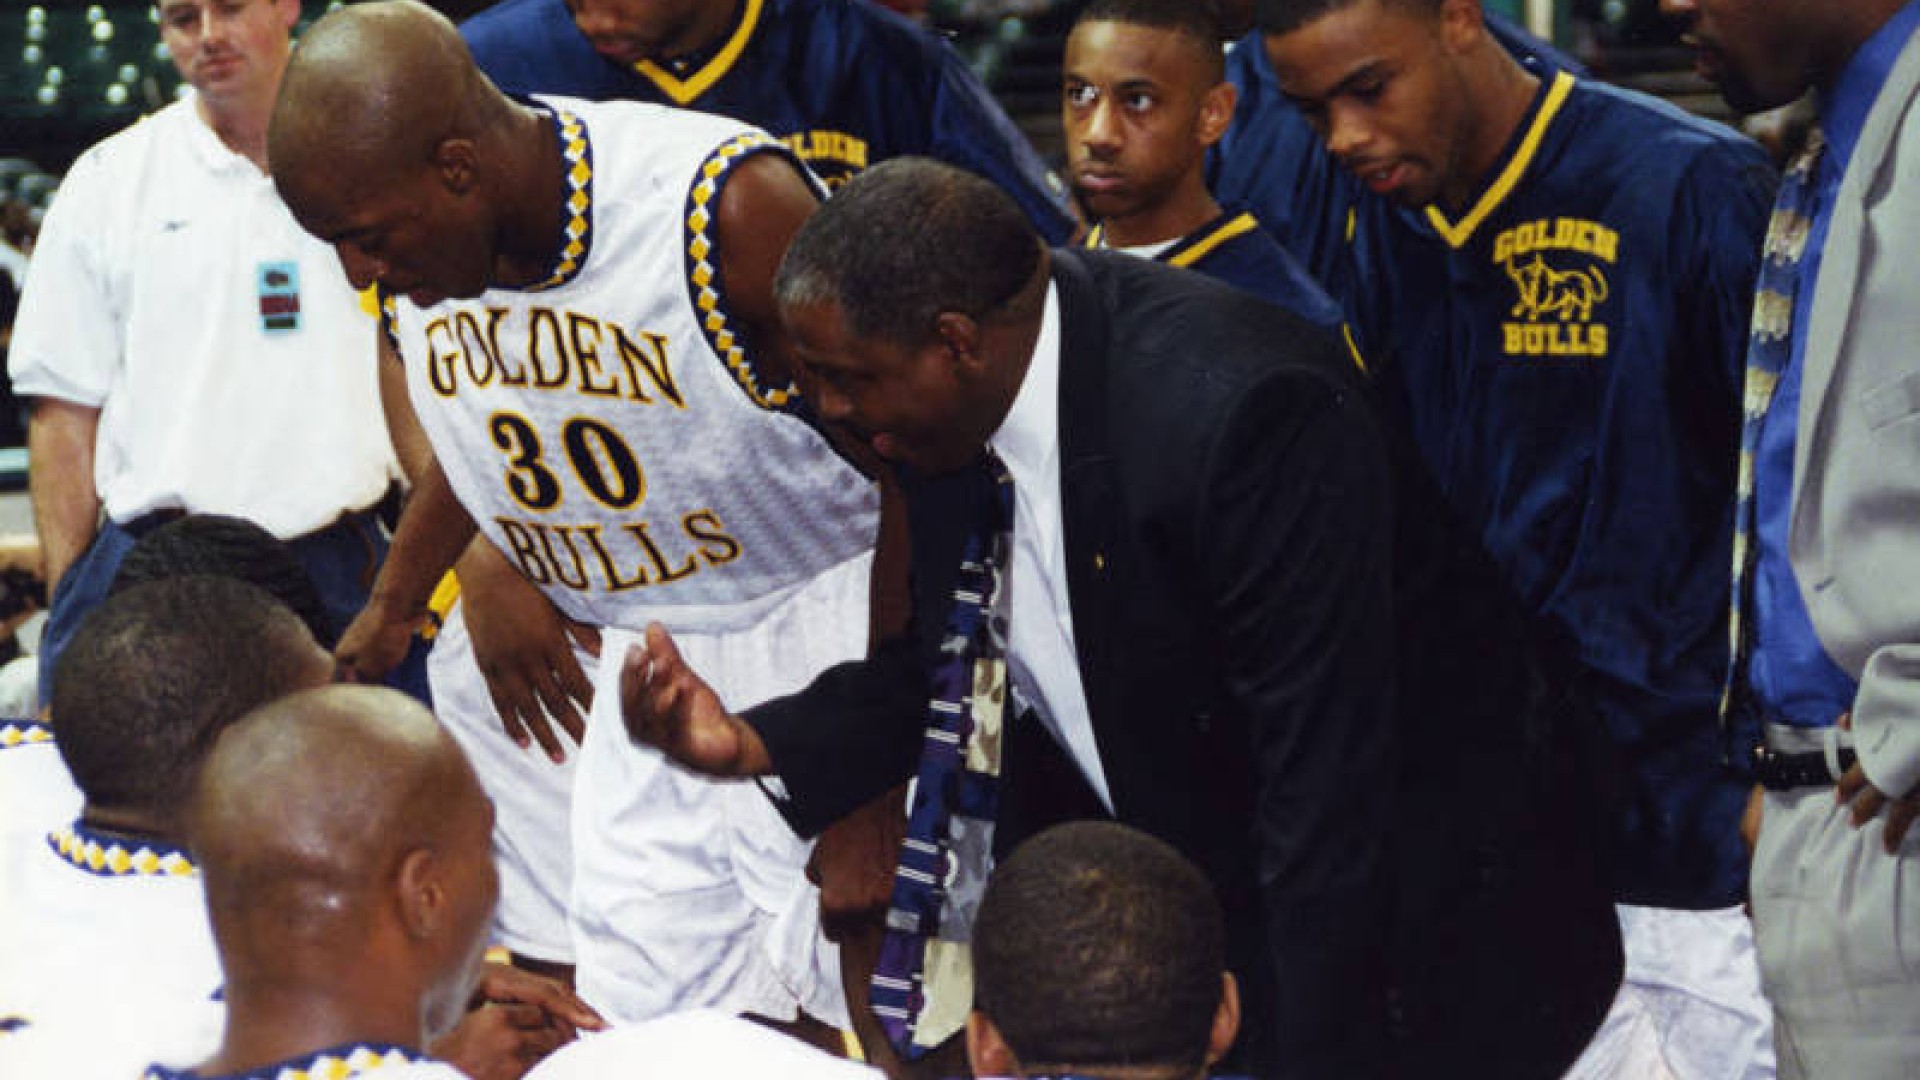 Steve Joyner Sr. Coaching the Golden Bulls Basketball Team in the huddle